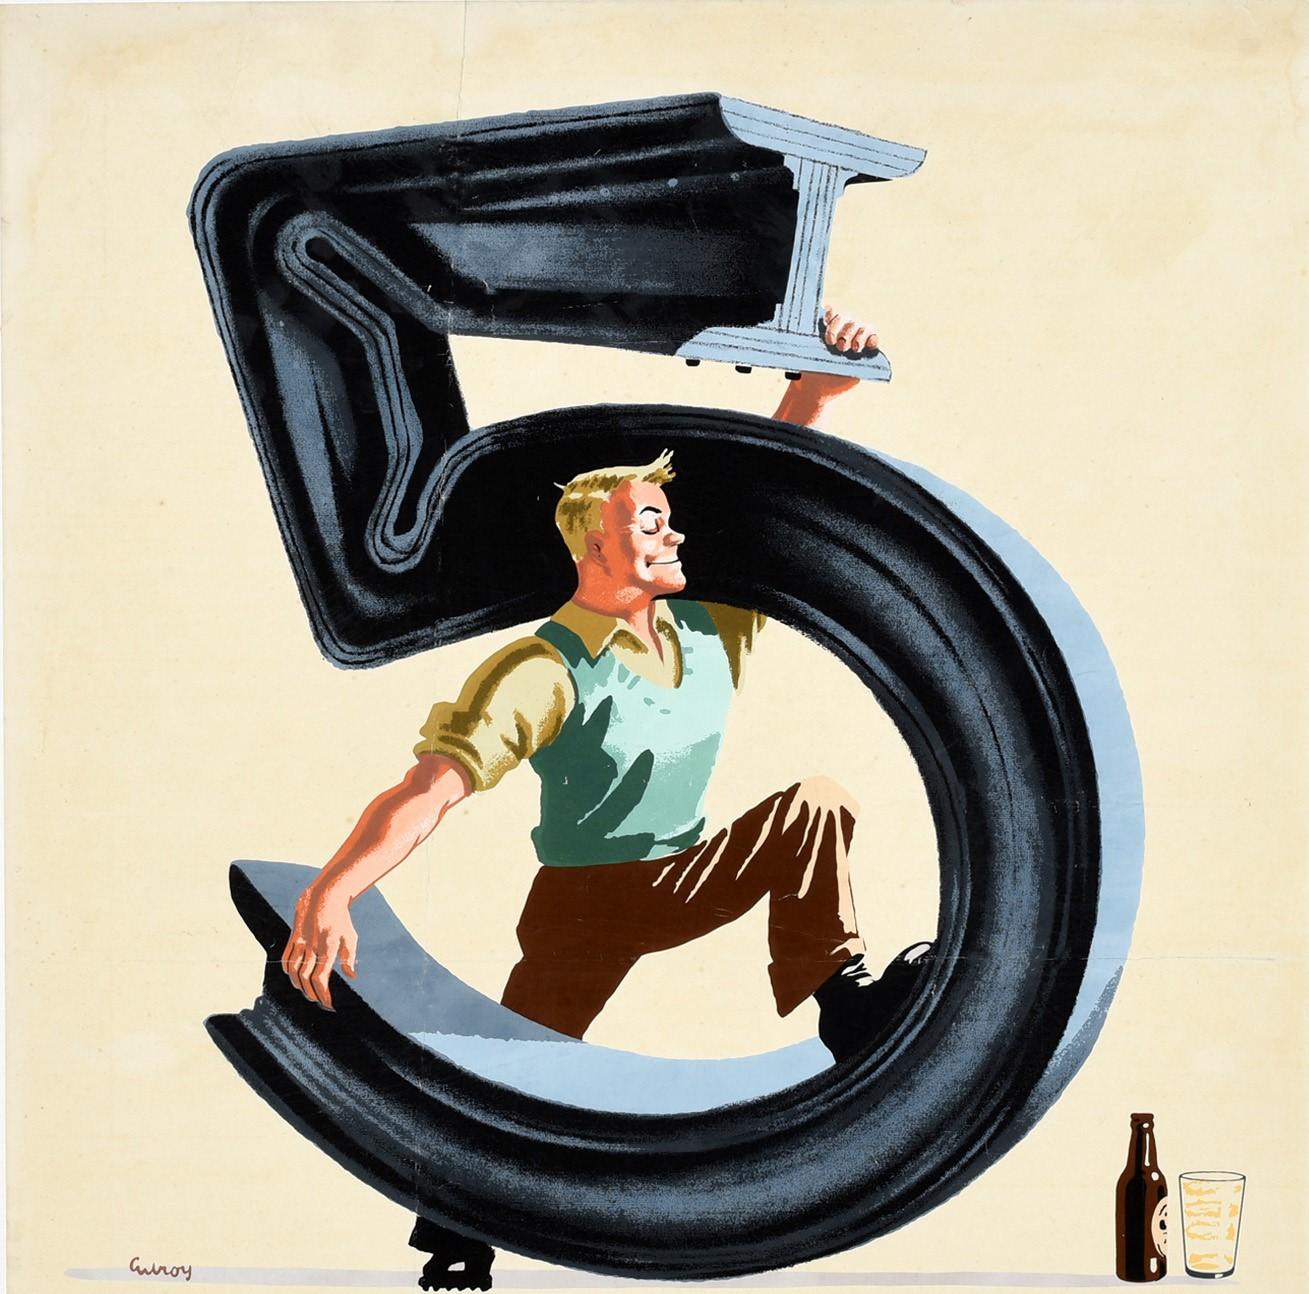 Affiche publicitaire vintage originale pour la boisson emblématique Guinness Irish stout beer - 5 Million Guinness for strength every day - représentant un homme souriant pliant une poutre métallique en forme de chiffre cinq avec aisance, la tenant